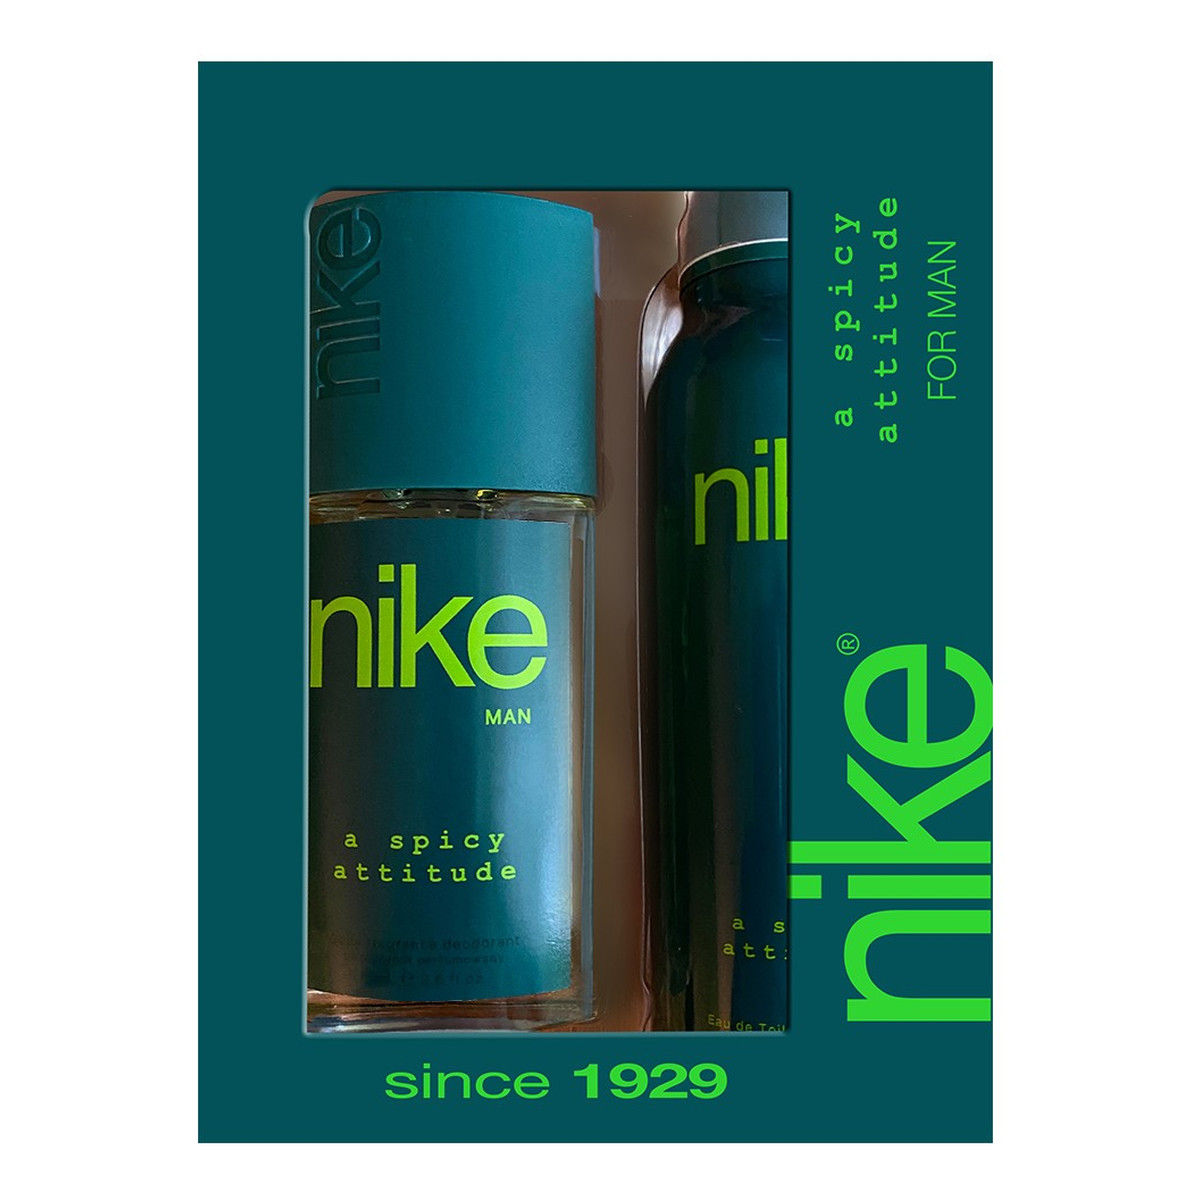 Nike Zestaw prezentowy A Spicy Attitude for man dezodorant w szkle + dezodorant spray 200ml